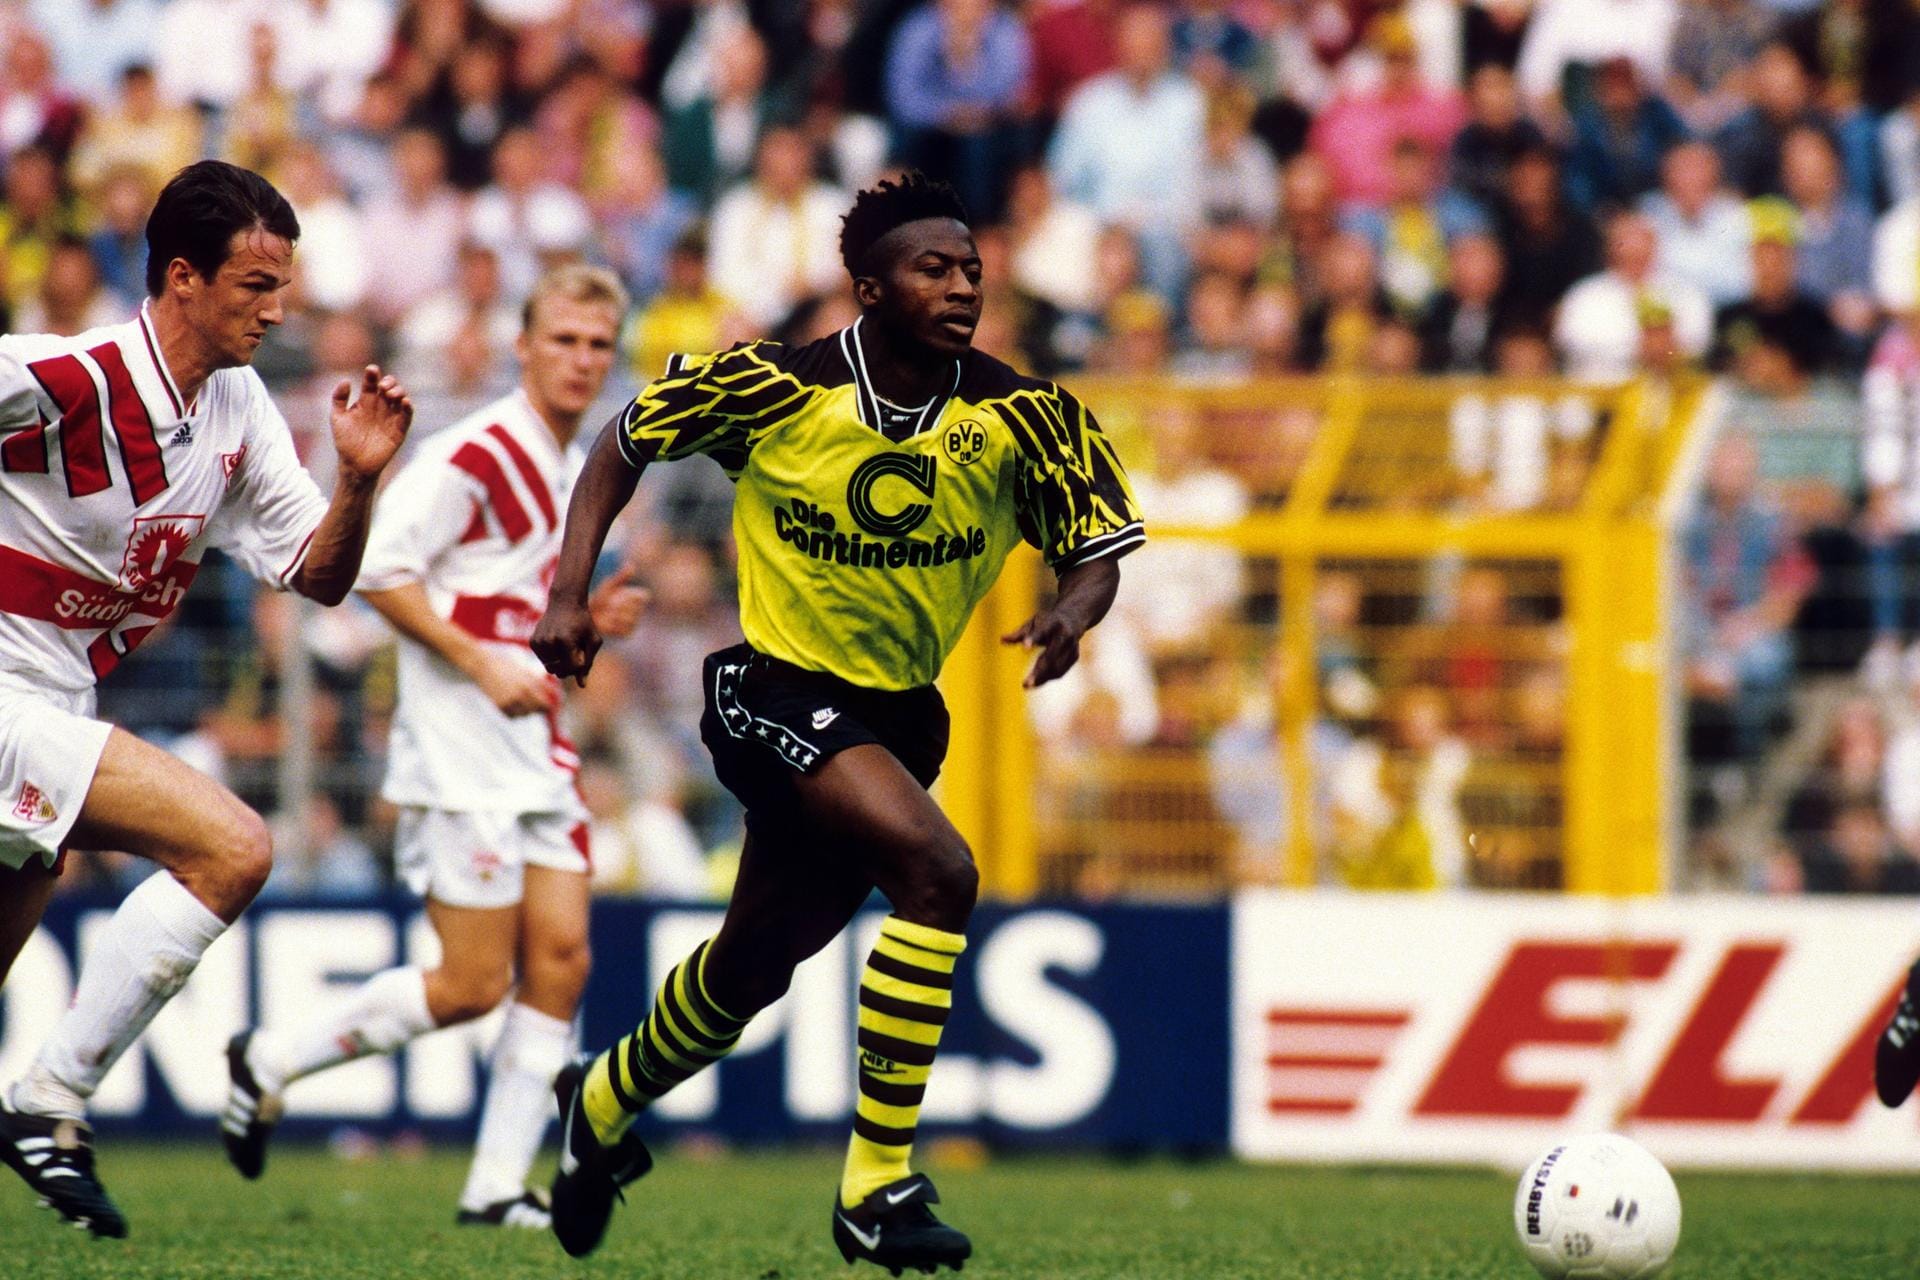 Ibrahim Tanko (Borussia Dortmund): Der Offensivspieler durfte sein Bundesliga-Debüt für Borussia Dortmund am 24. September 1994 gegen den VfB Stuttgart bestreiten. Er war zu diesem Zeitpunkt 17 Jahre, 1 Monat und 30 Tage alt.